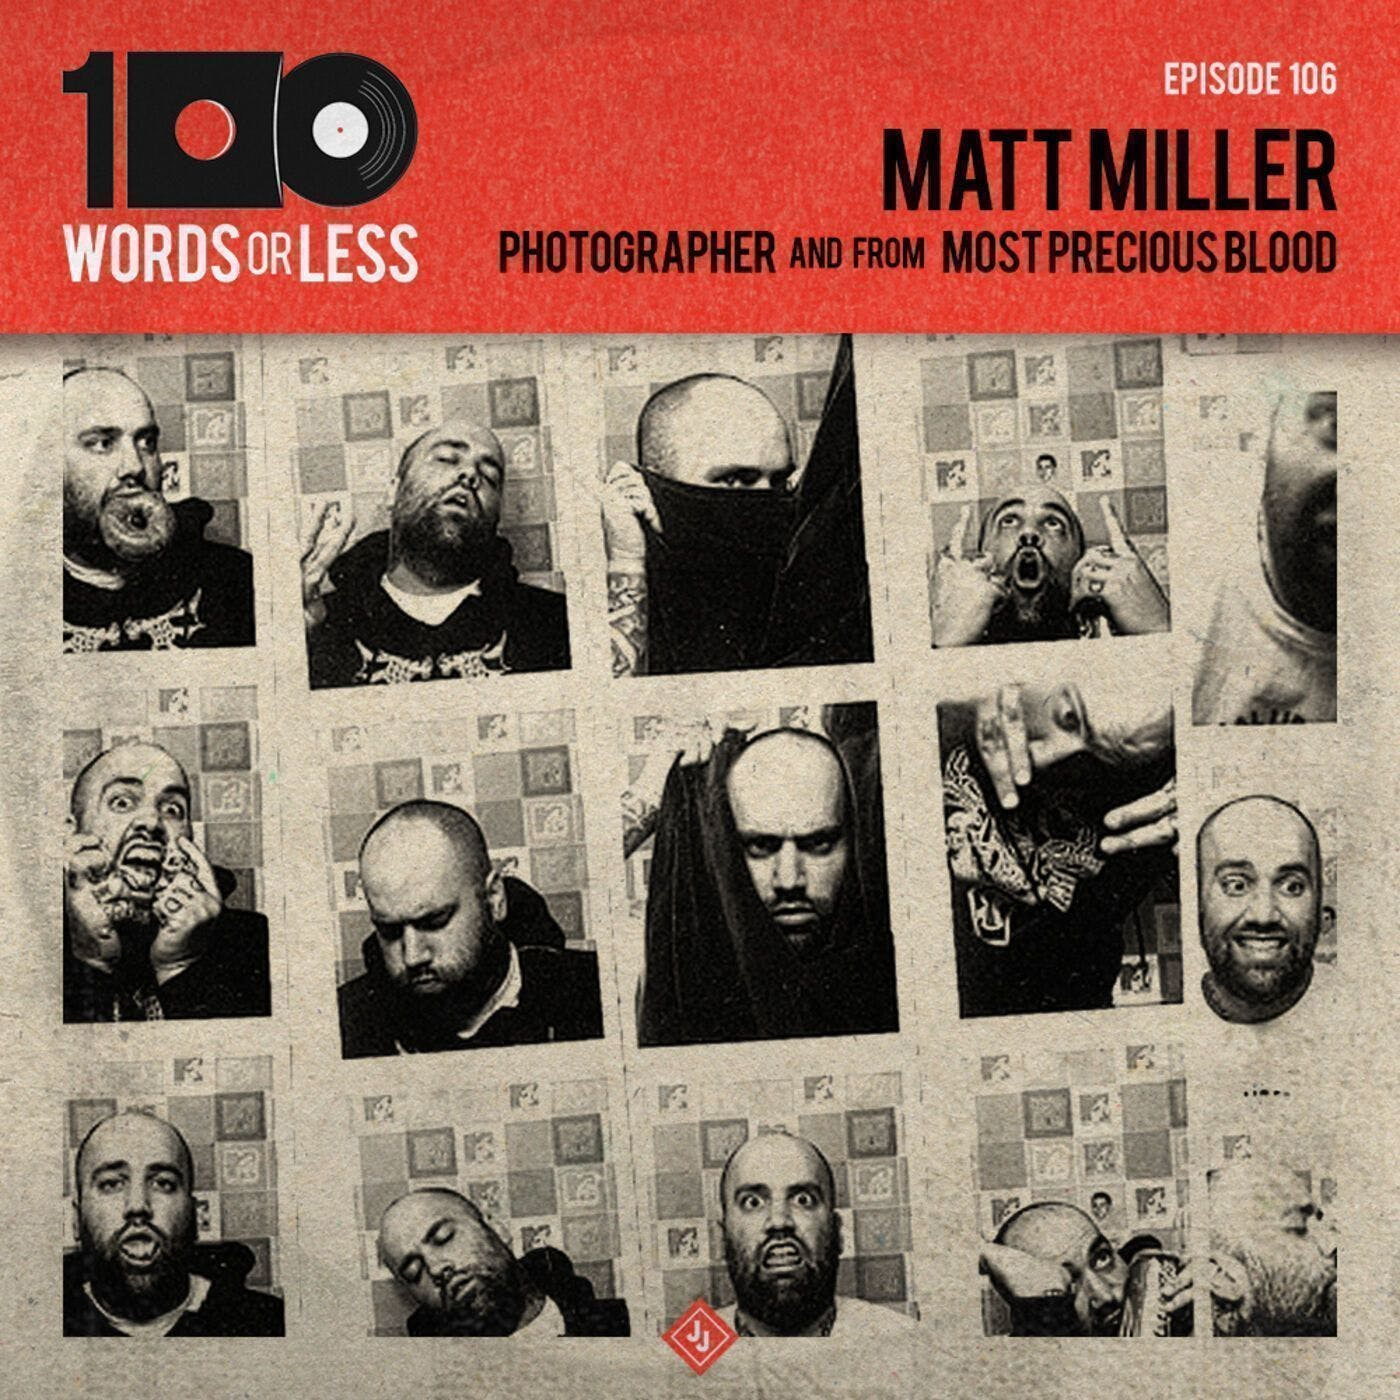 Matt Miller, professional photographer & Most Precious Blood